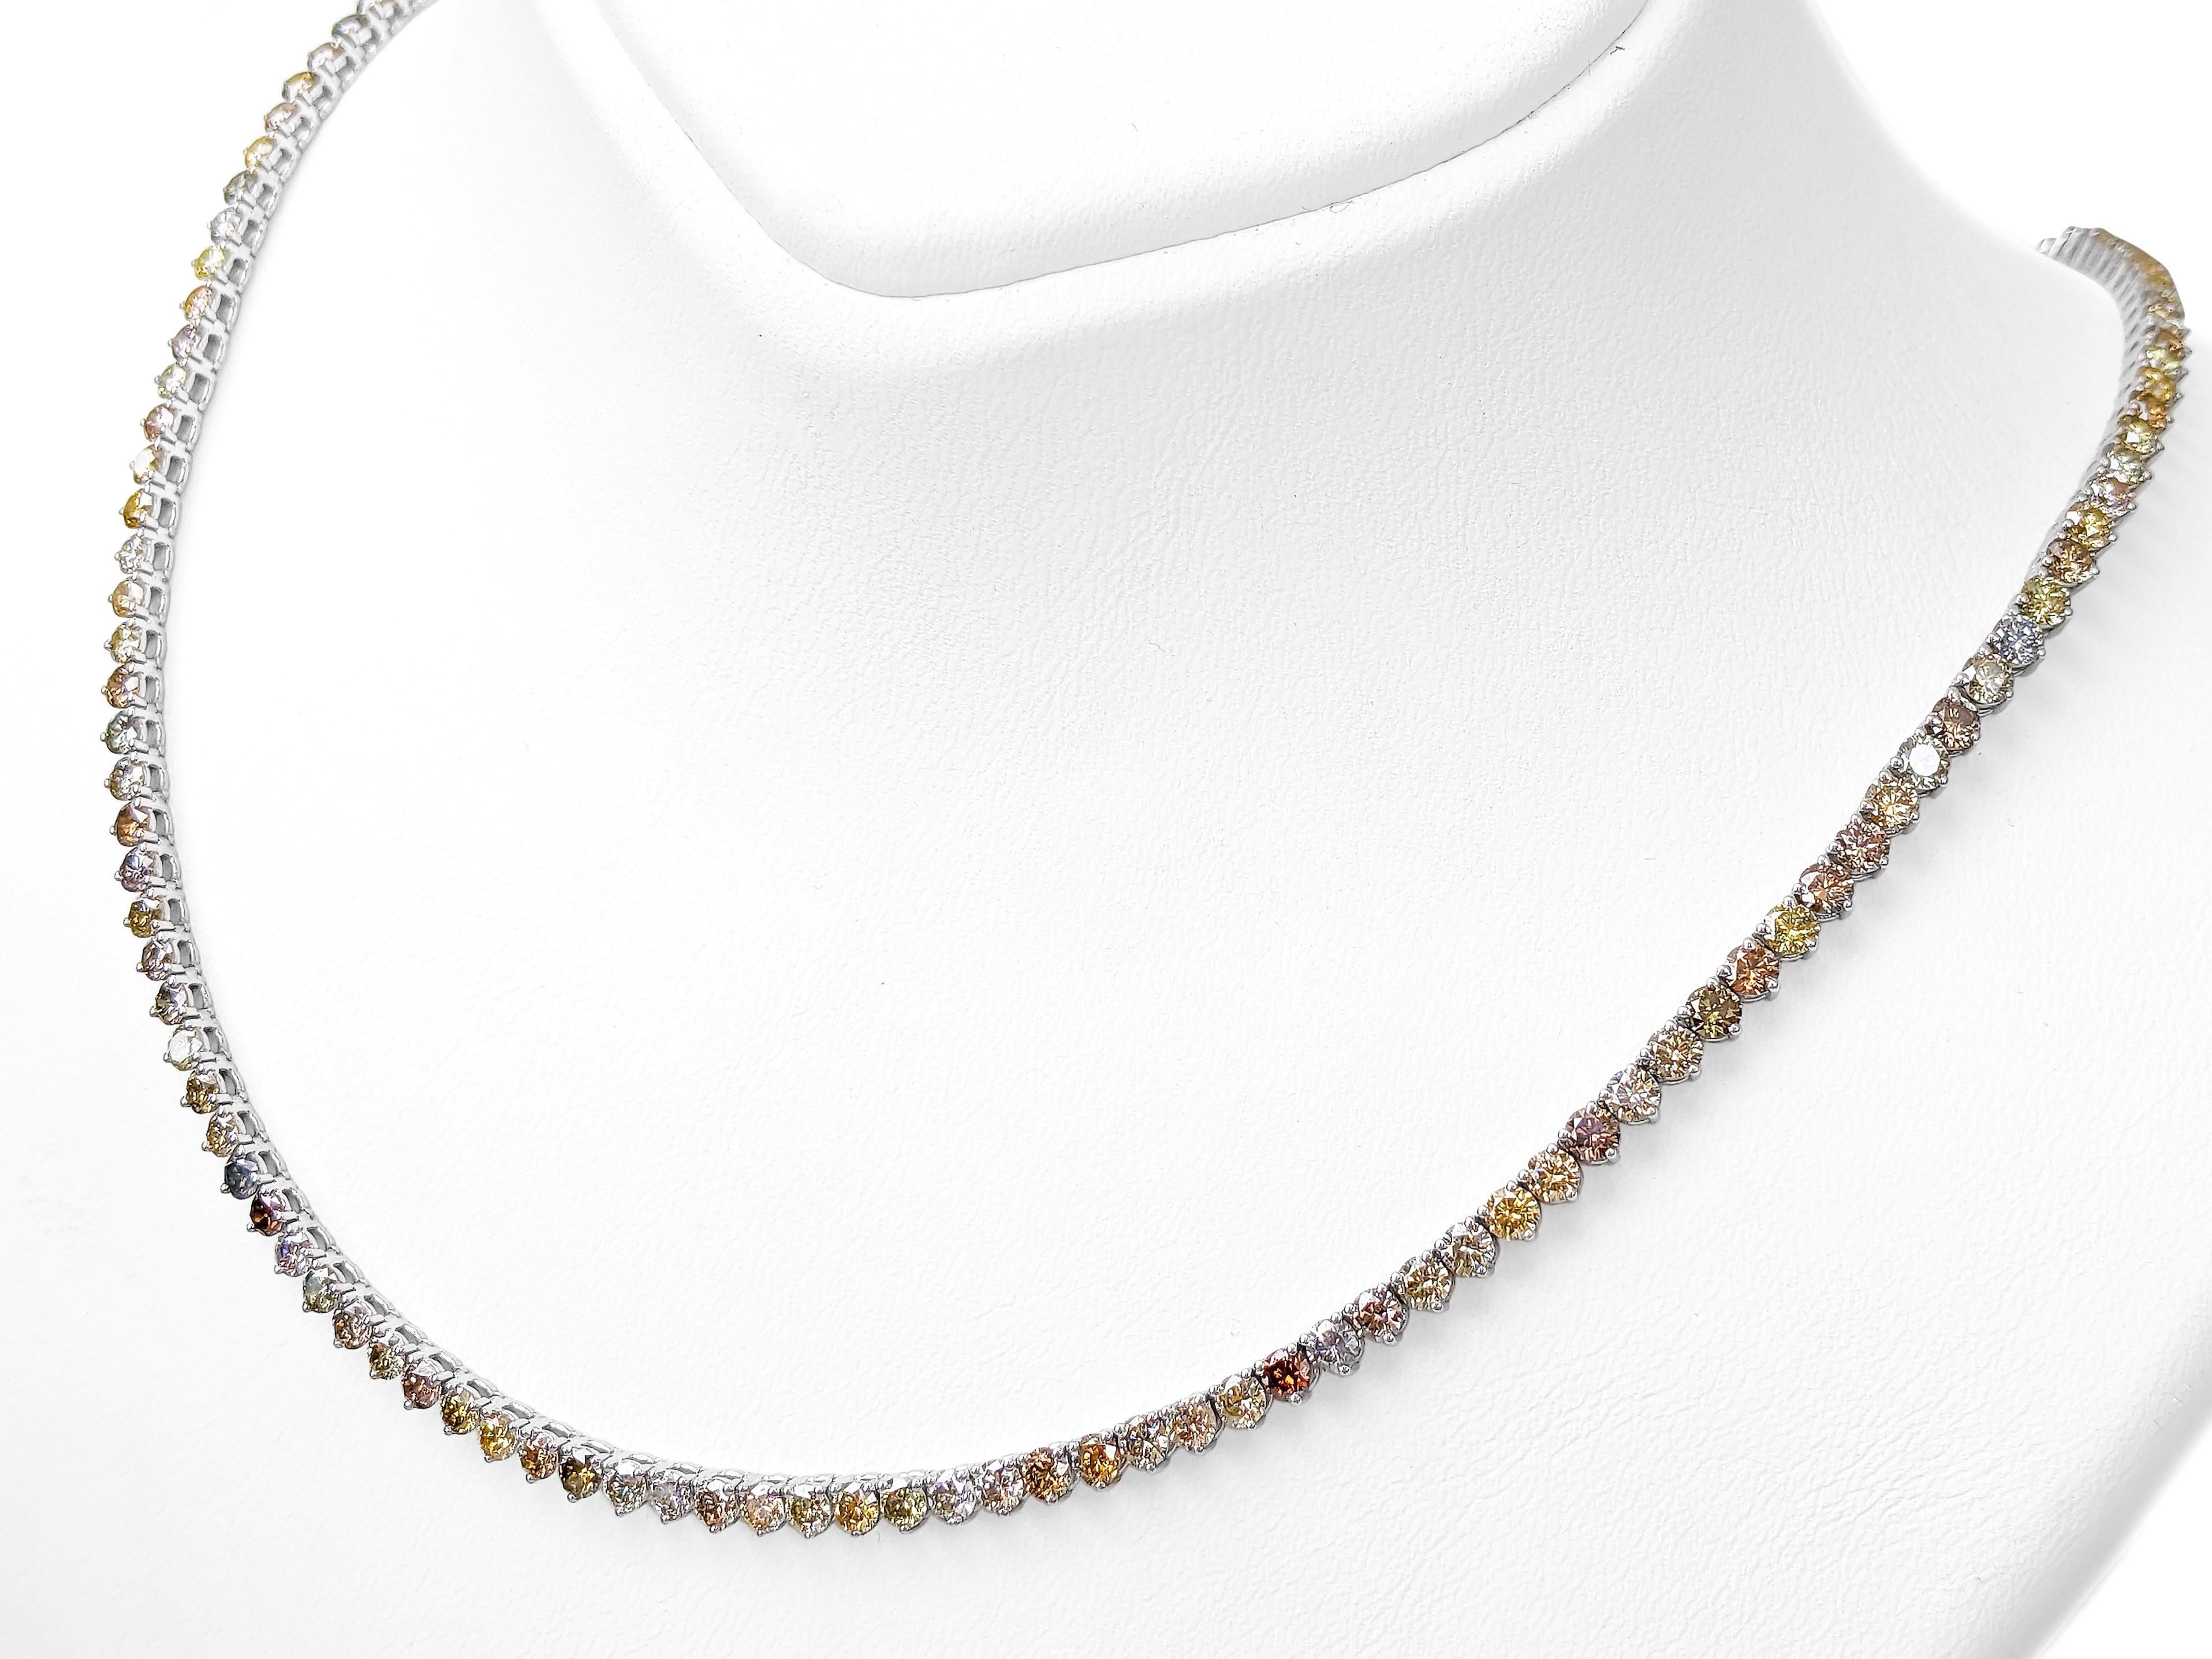 NO RESERVE - 13.85 Carat Fancy Color Diamonds, 14k White Gold Necklace 2